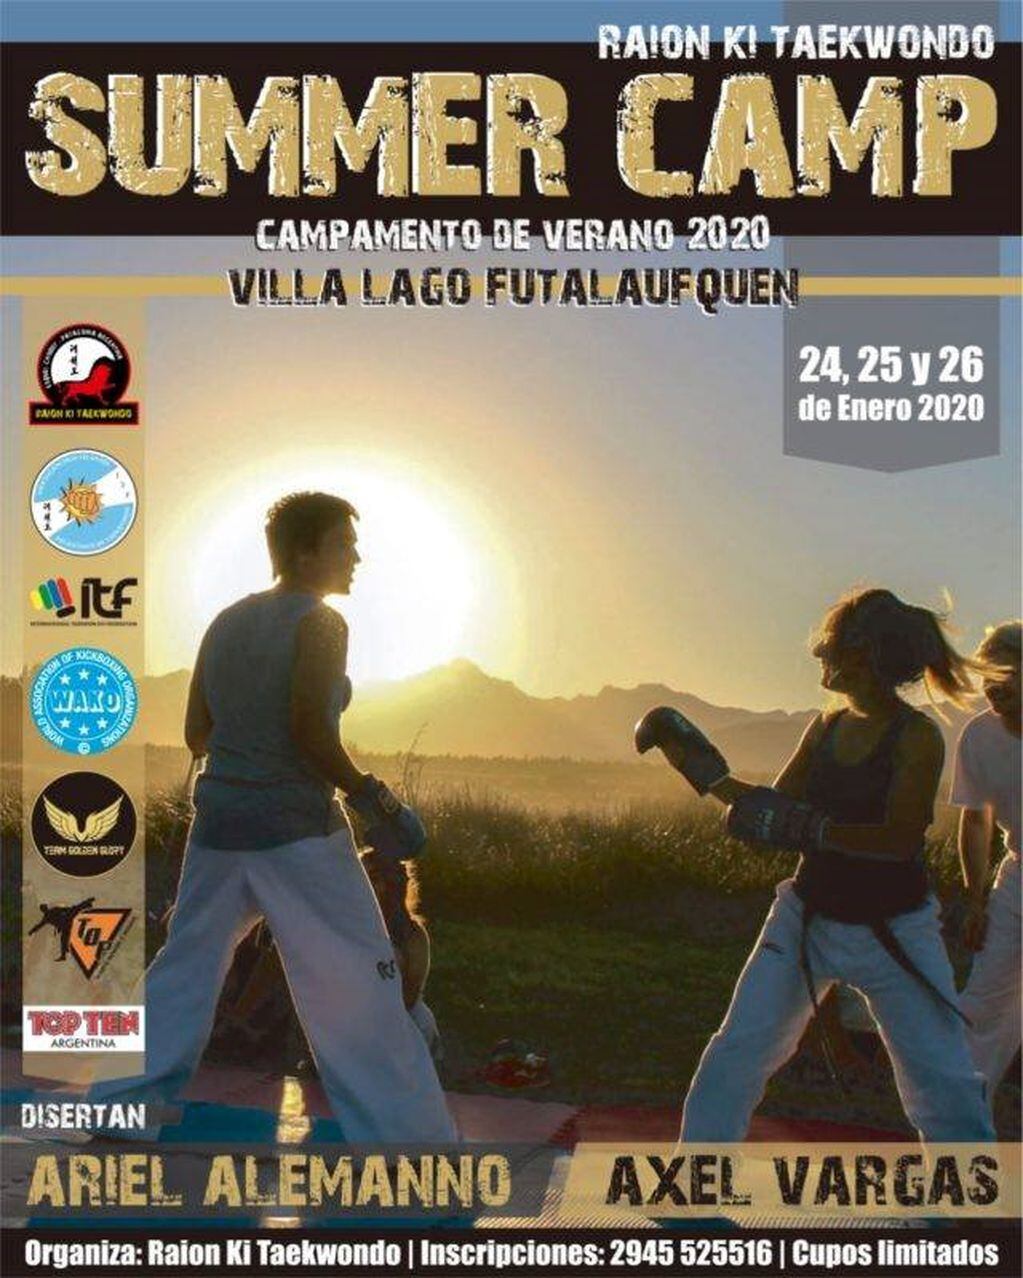 El Summer Camp Esquel se realizará en el Parque Nacional Los Alerces, los días 24,25 y 26 de enero.
Afiiche oficial del campamento.